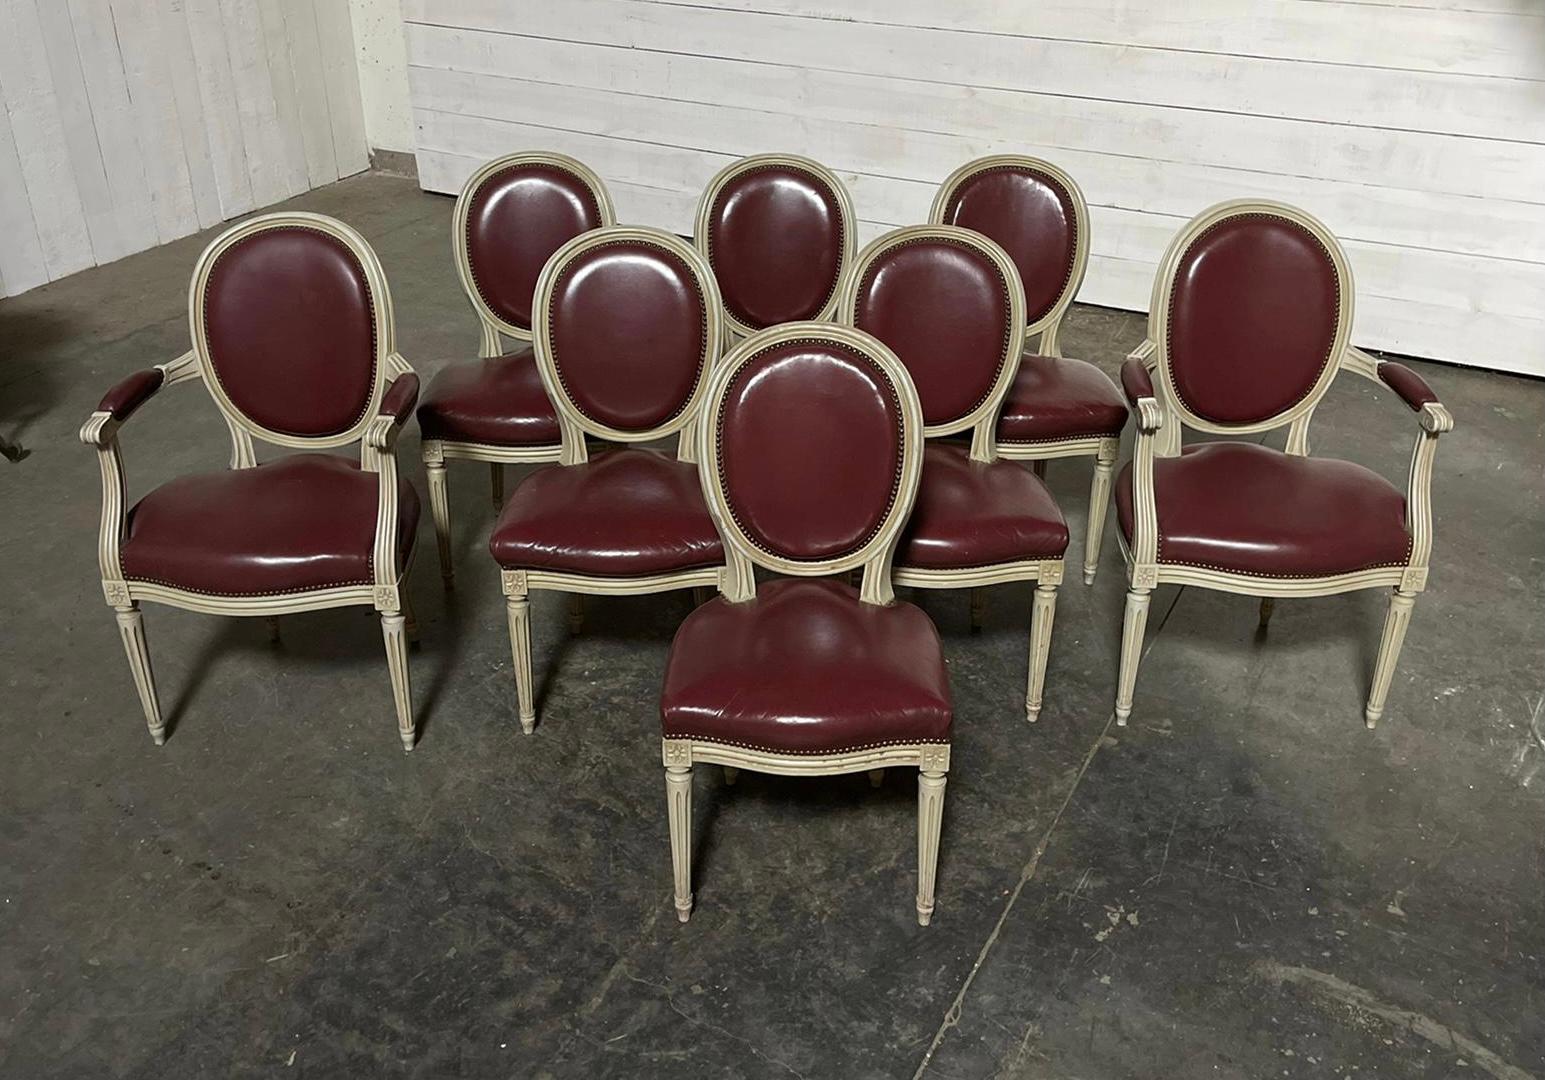 Eine schöne Reihe von 8 Französisch Esszimmerstühle, mit ursprünglichen off weißes Finish und original Lederpolsterung, die in sehr gutem Zustand ist, natürlich können Sie es abnehmen und neu polstern in einem Stoff Ihrer Wahl. Die gefederten